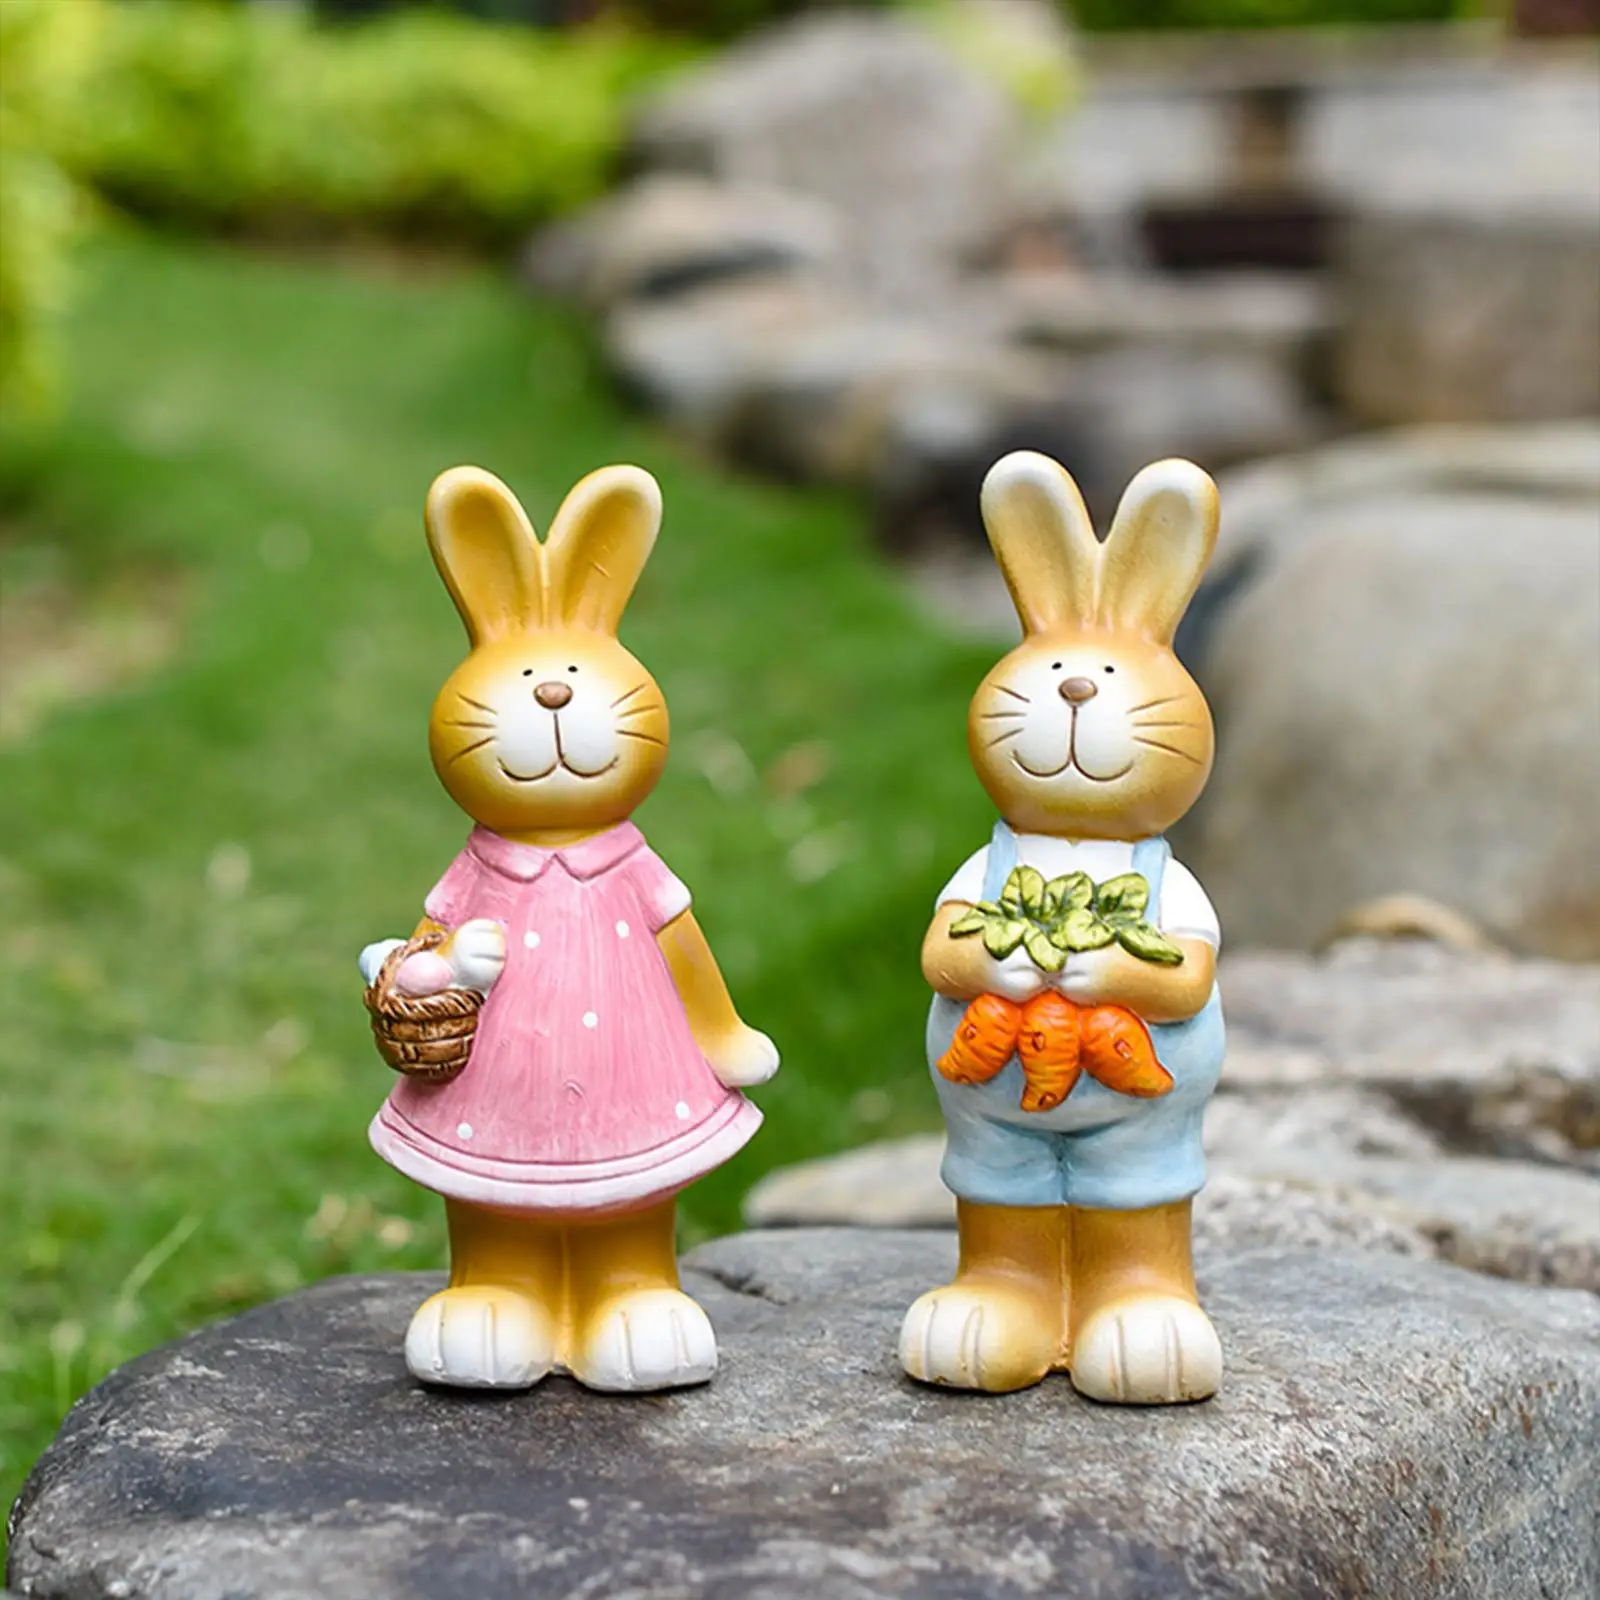 Rabbit Statue Cute Ornament Home Decor Bunny Figurine for Patio Outdoor Lawn